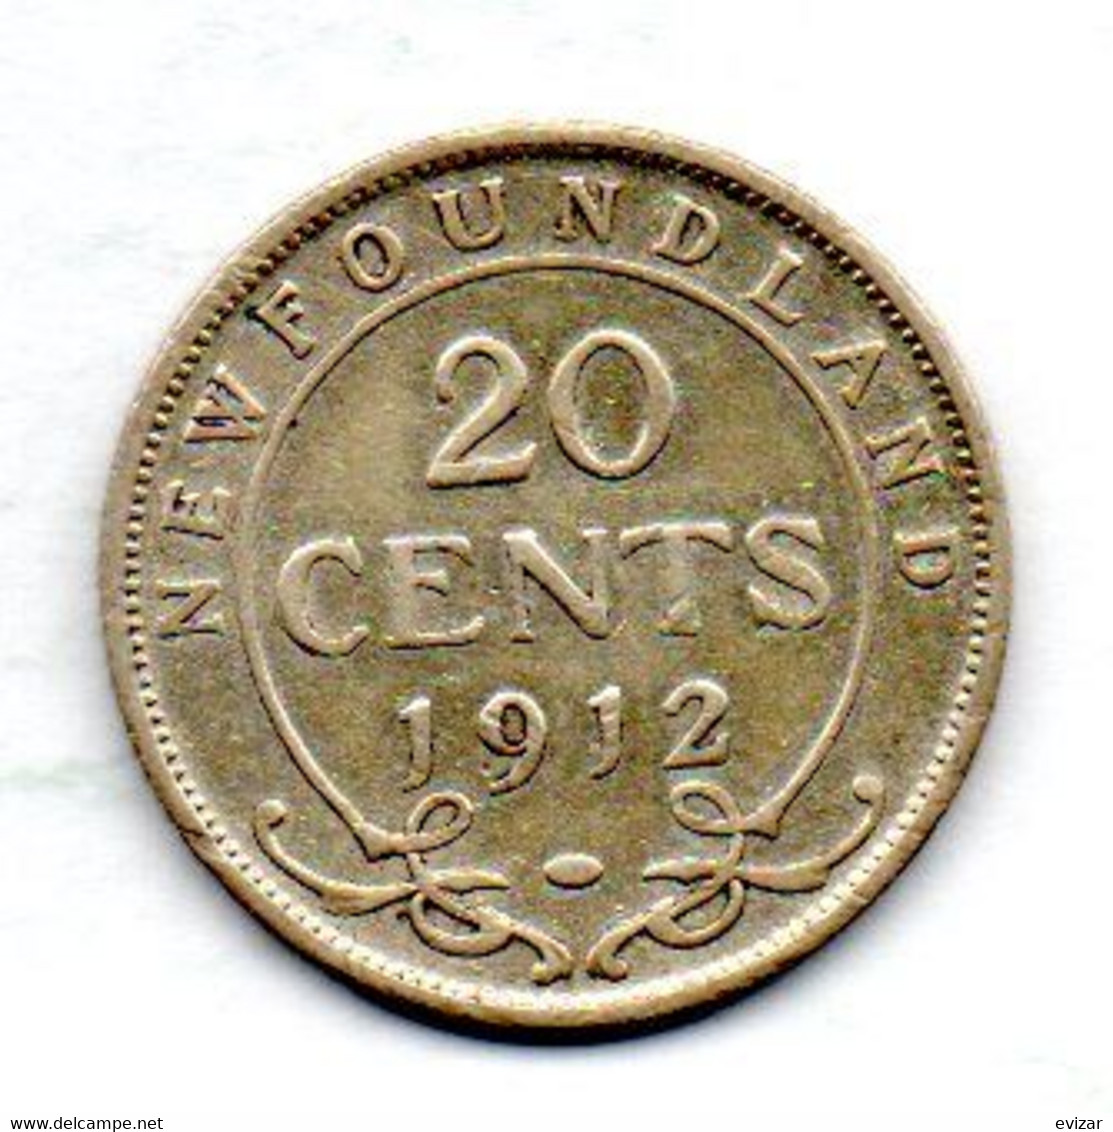 CANADA - NEW FOUNDLAND, 20 Cents, Silver, Year 1912, KM #15 - Canada